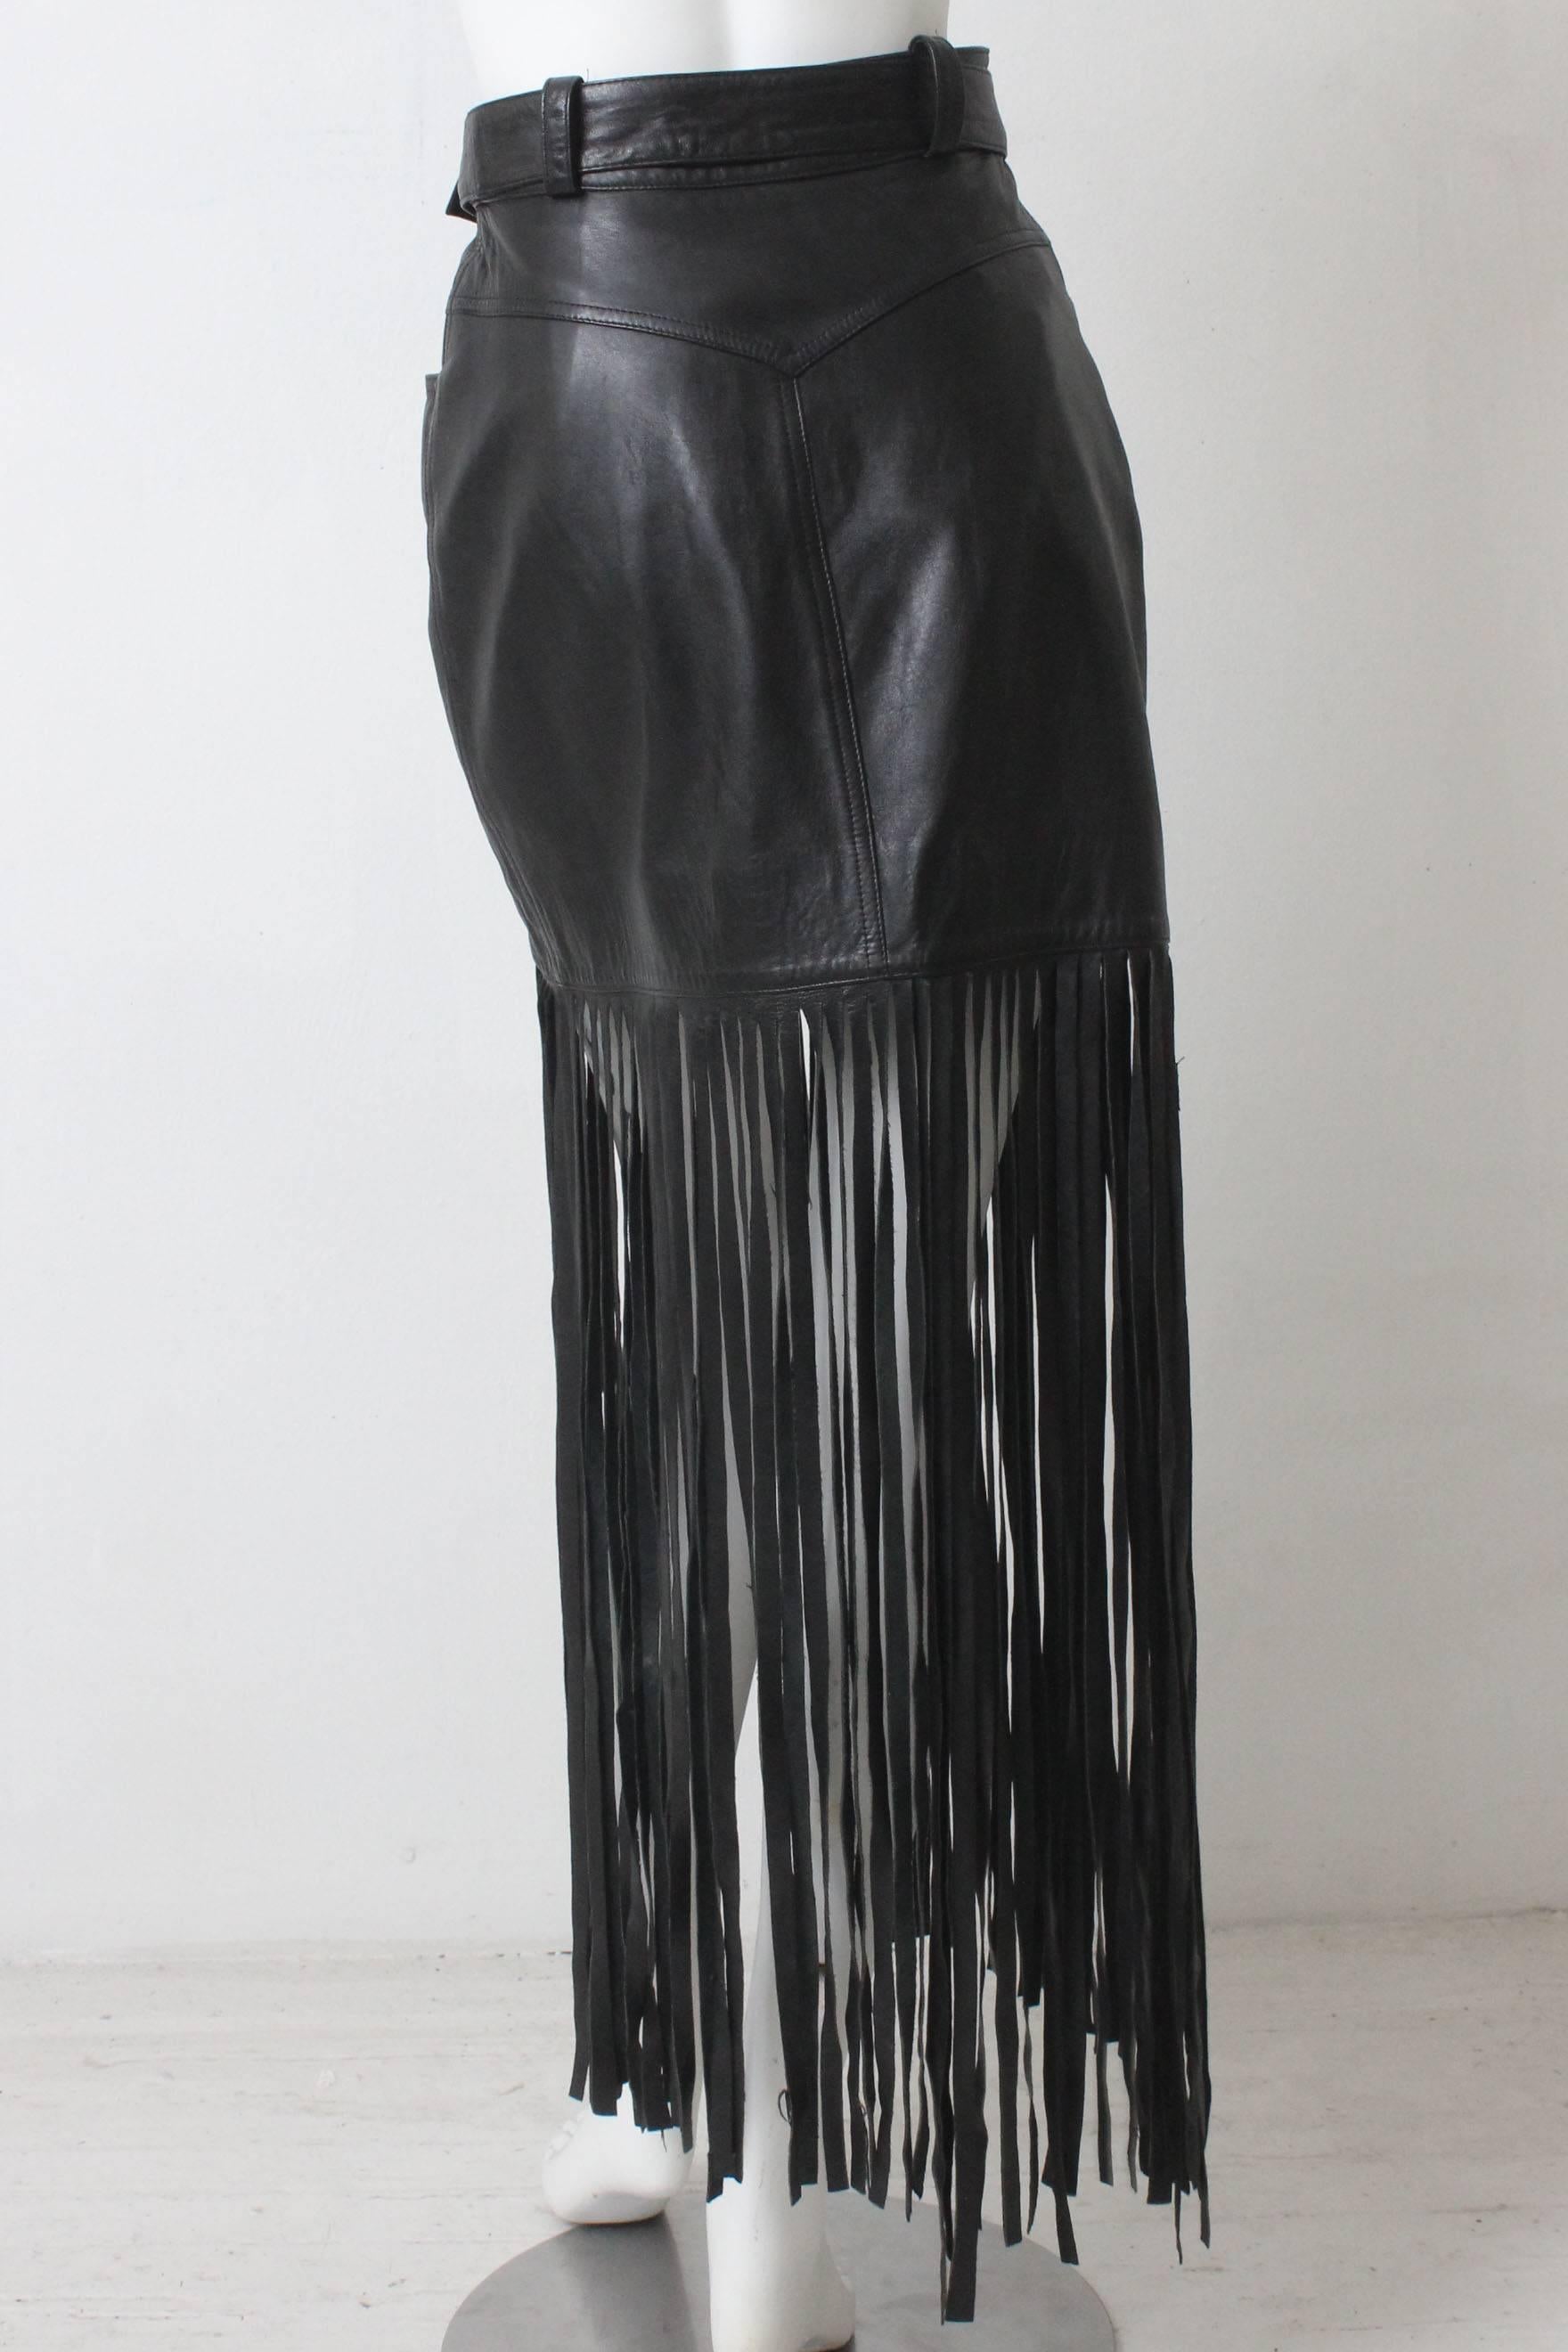 1980s Claude Montana Black Leather Floor Length Fringe Skirt For Sale 2